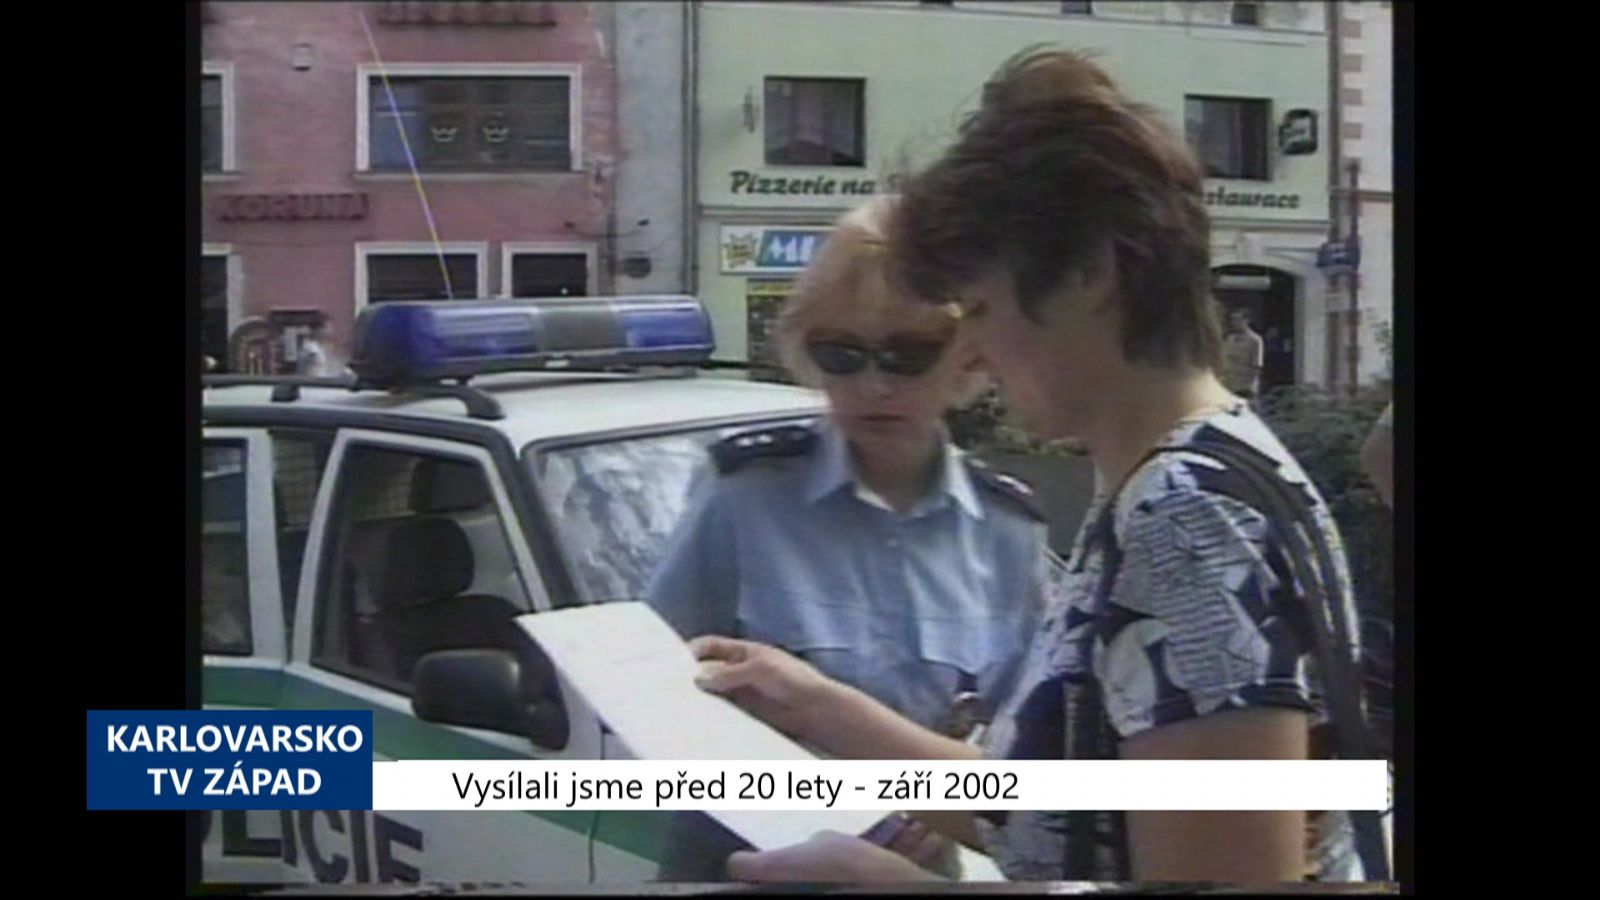 2002 – Sokolovsko: Lidé si mohou zaregistrovat chaty (TV Západ)